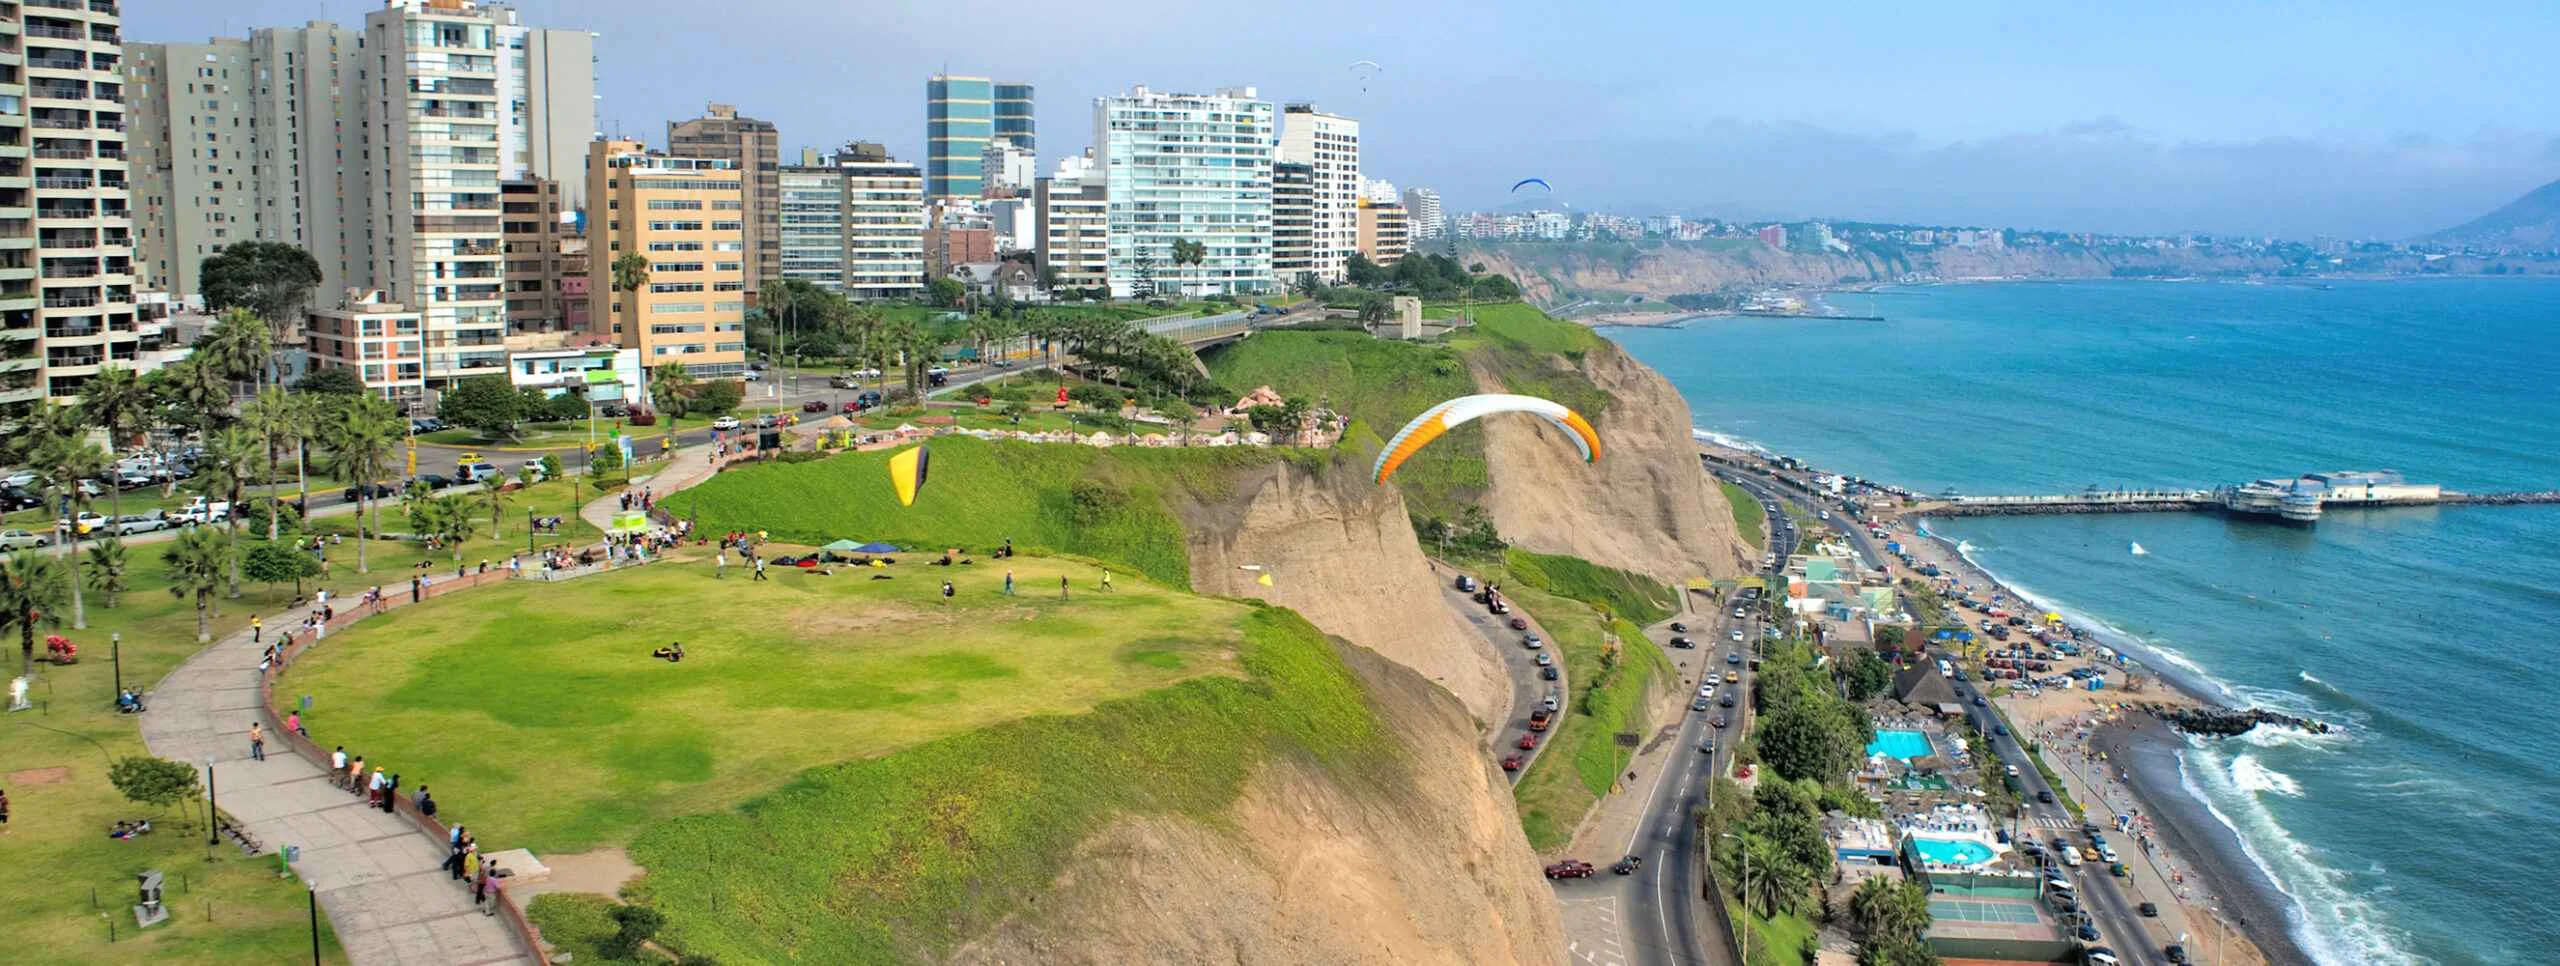 Lima Costa Verde ciudad Miraflores